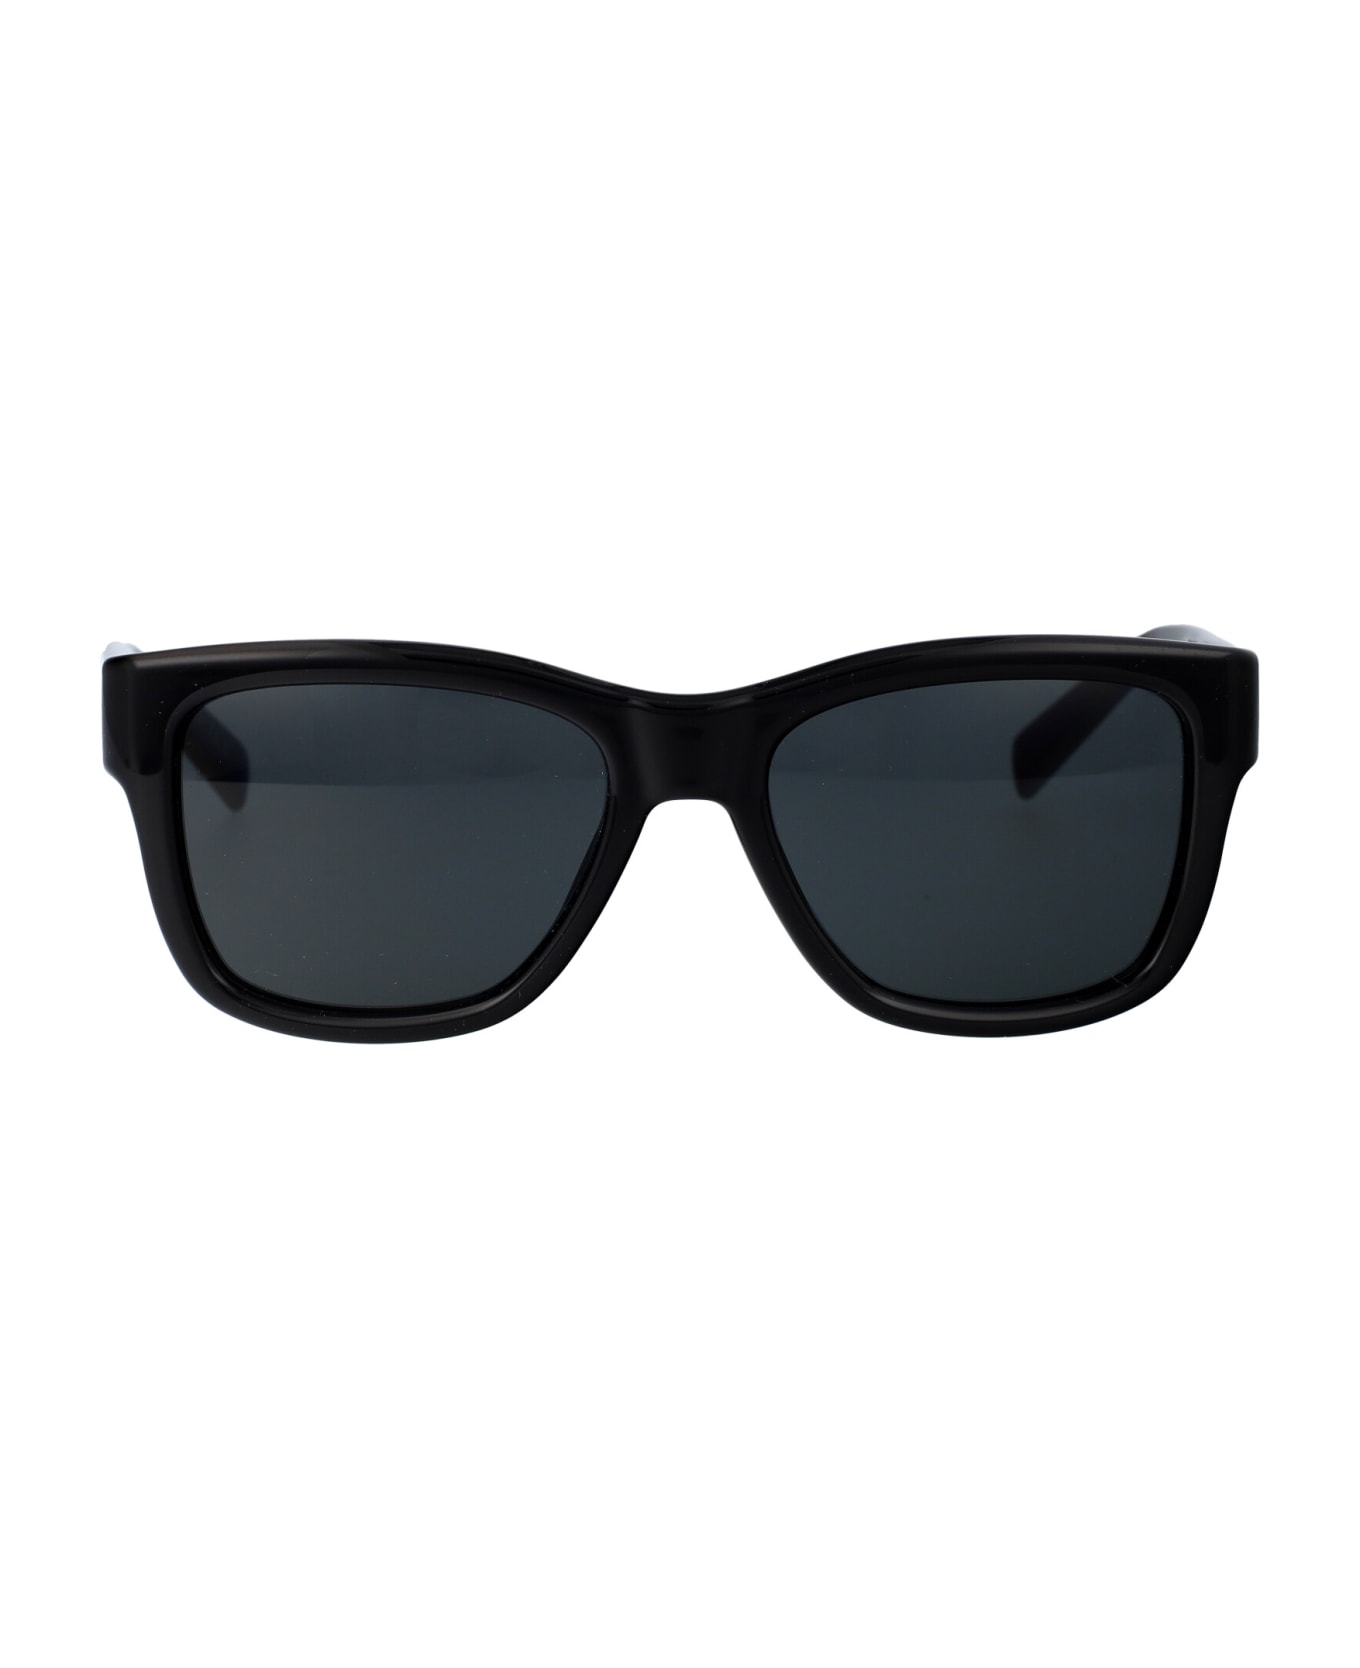 Saint Laurent Eyewear Sl 674 Sunglasses - 001 BLACK BLACK BLACK